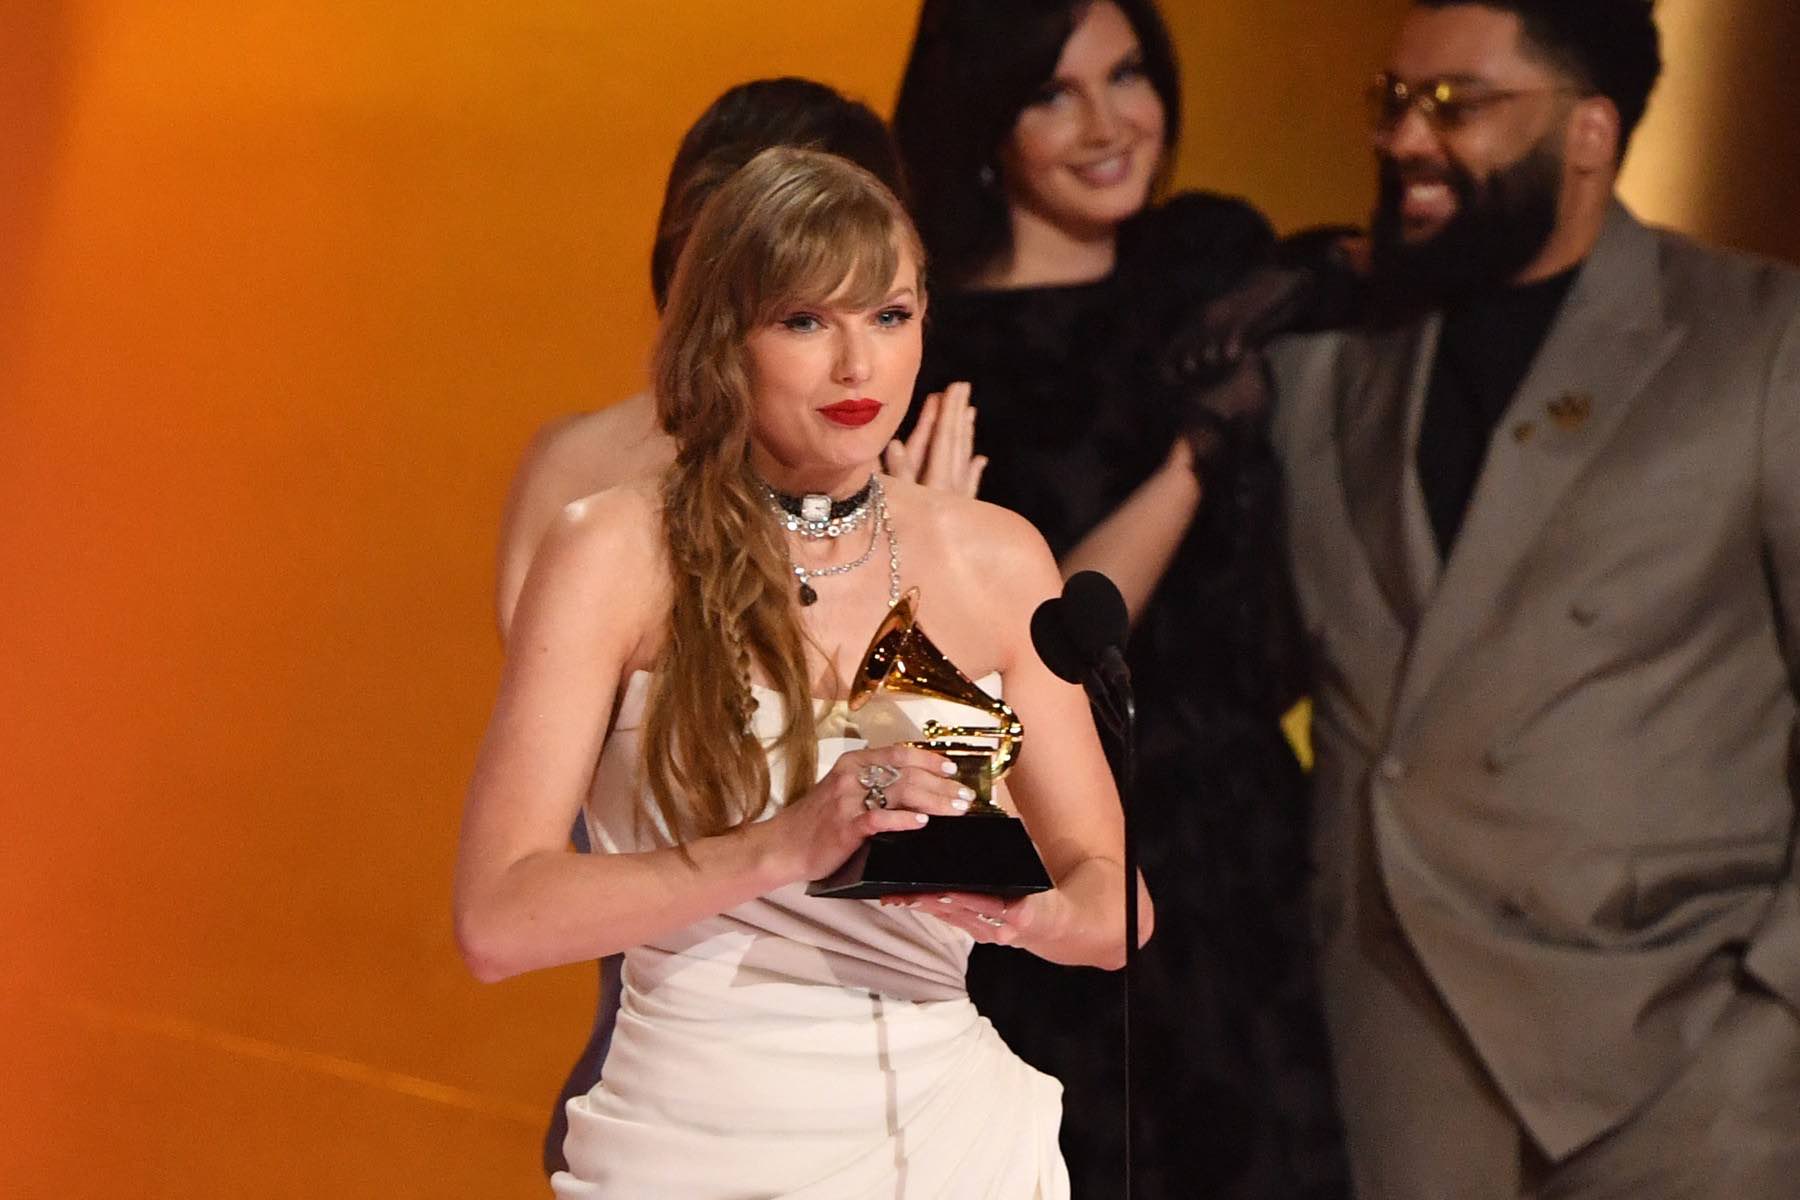 Američka muzička zvezda Tejlor Svift četvrti put zaredom osvojila Gremi nagradu za album godine i ušla u istoriju/ Gremi nagrade